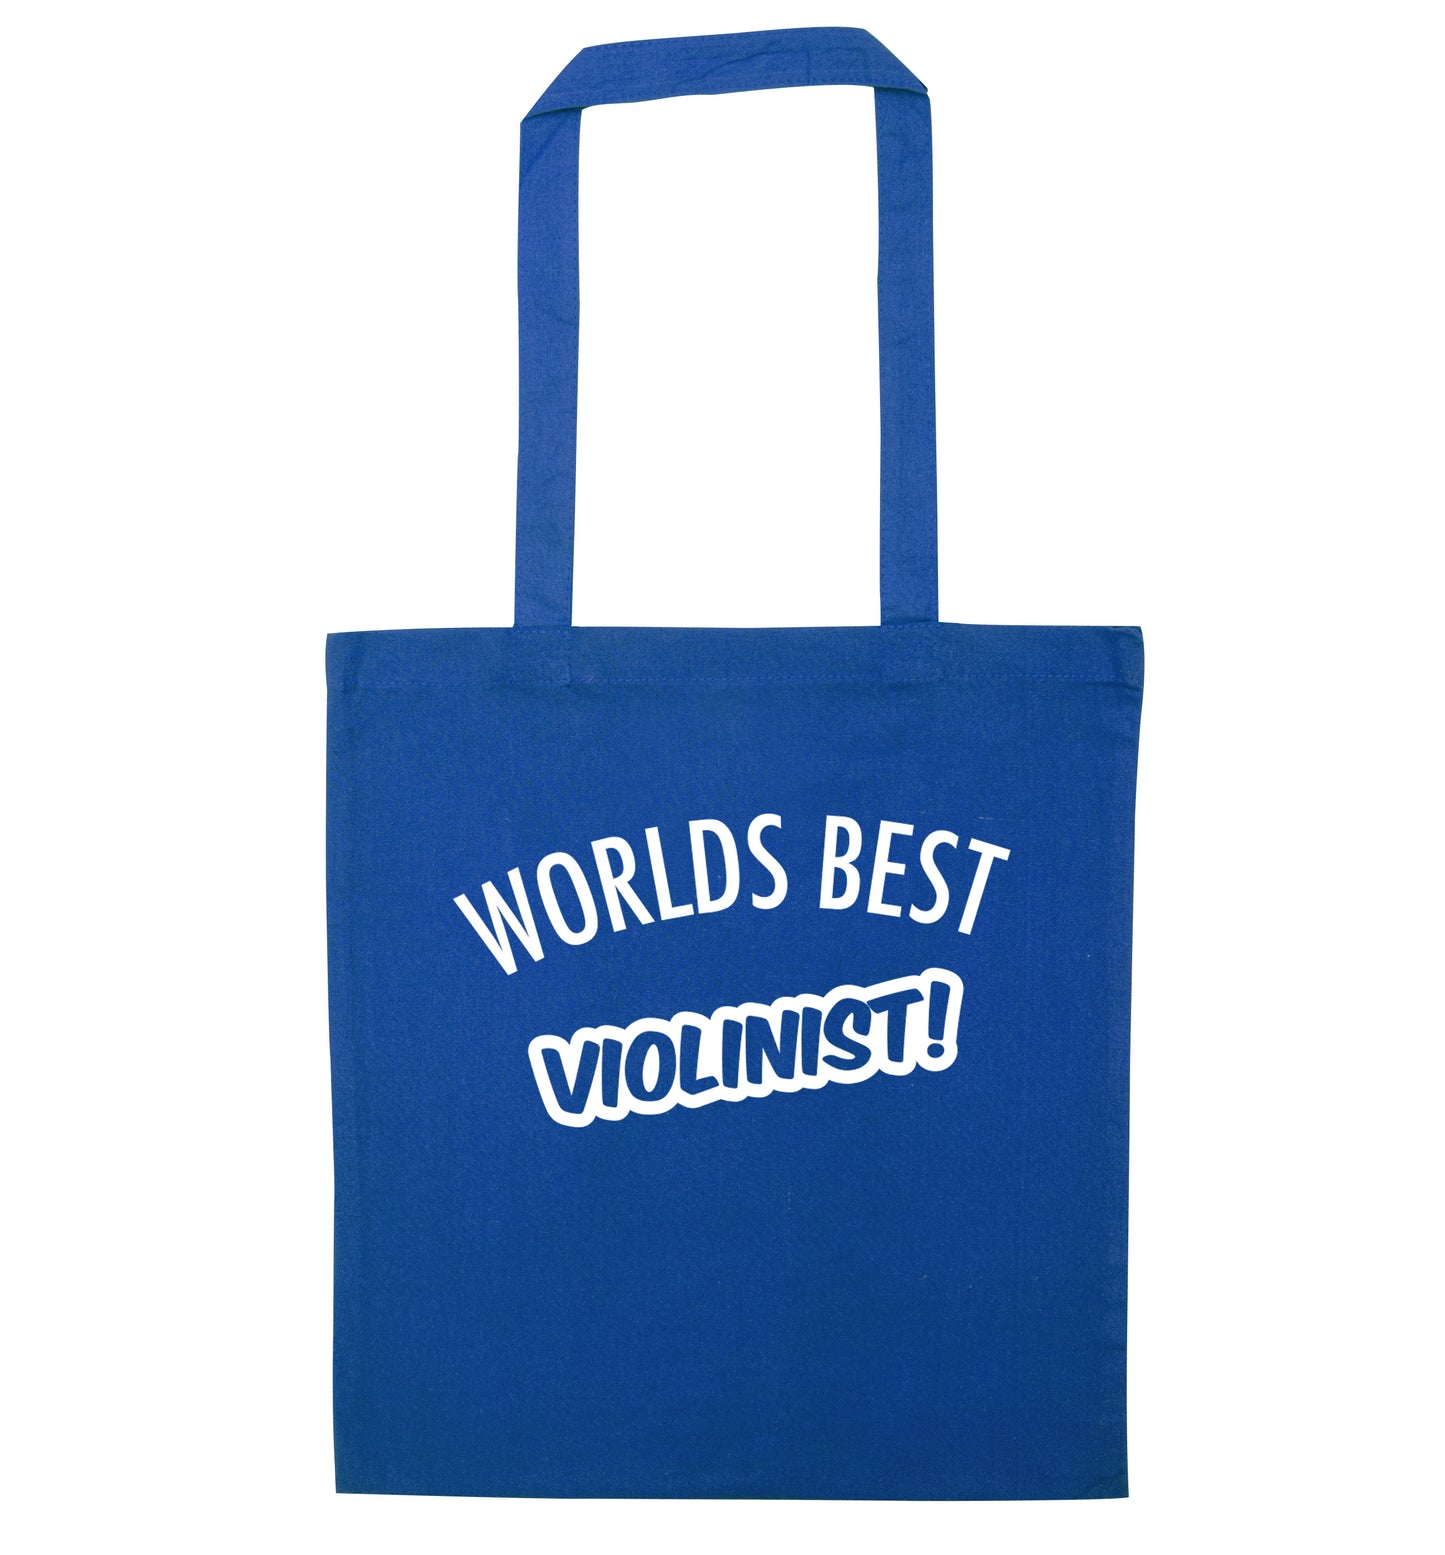 Worlds best violinist blue tote bag